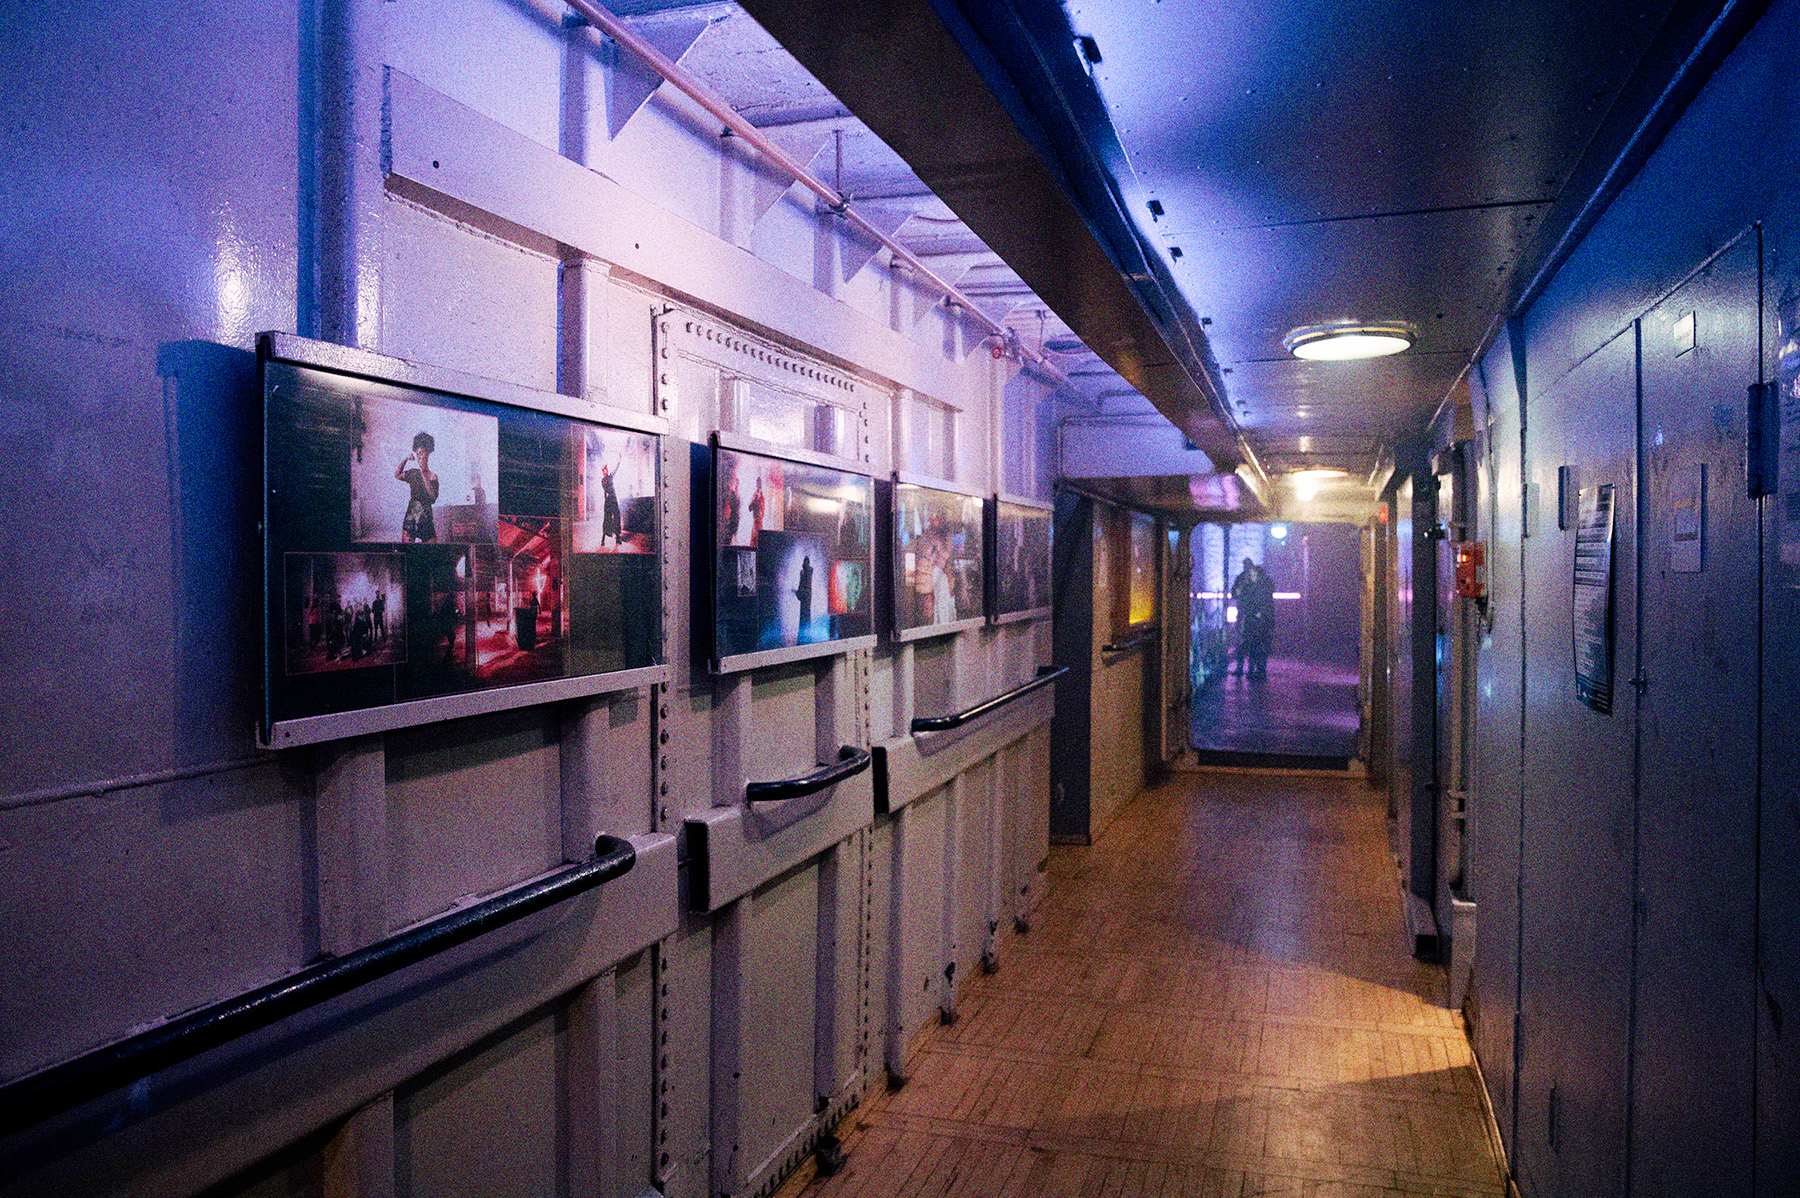 Der Betriebsgang der Stubnitz. An den Wänden hängen Bilderrahmen mit Fotos.